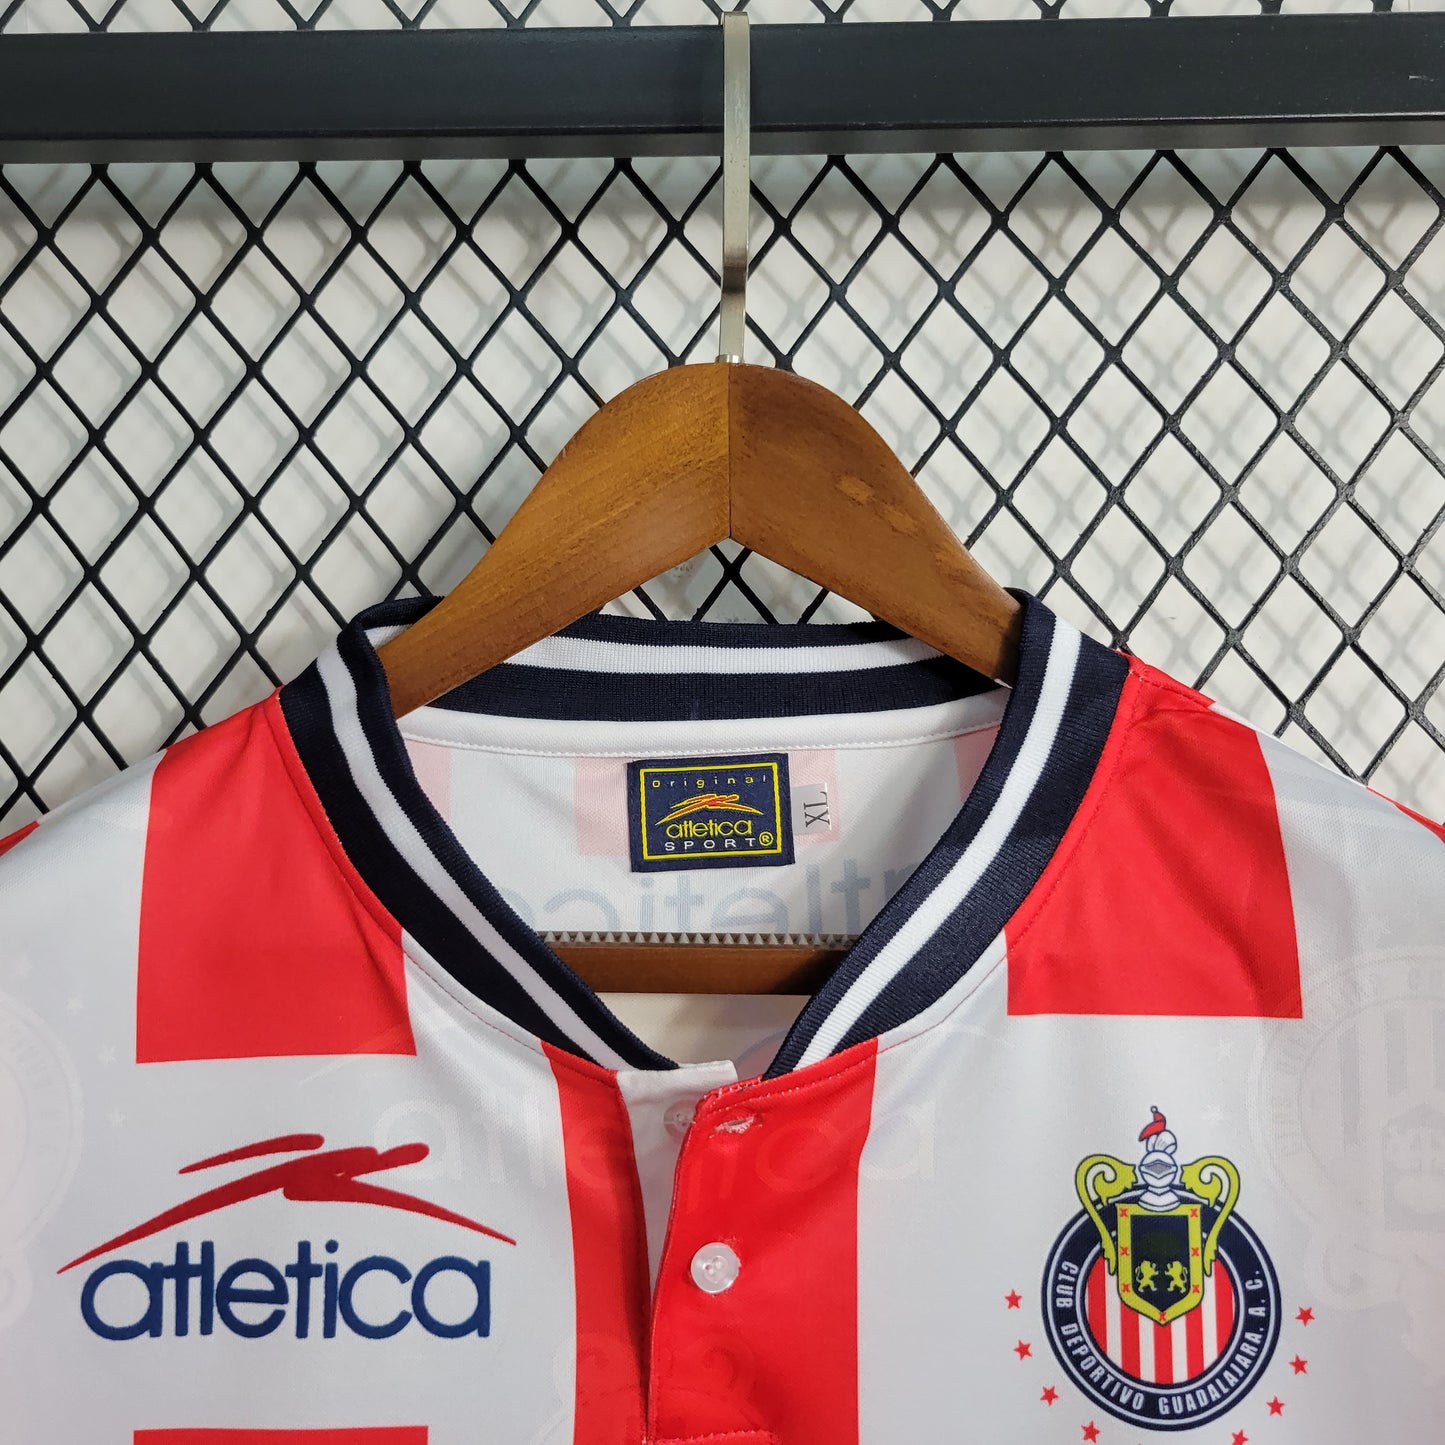 Camisa Retrô Chivas Guadalajara Home 1994/95